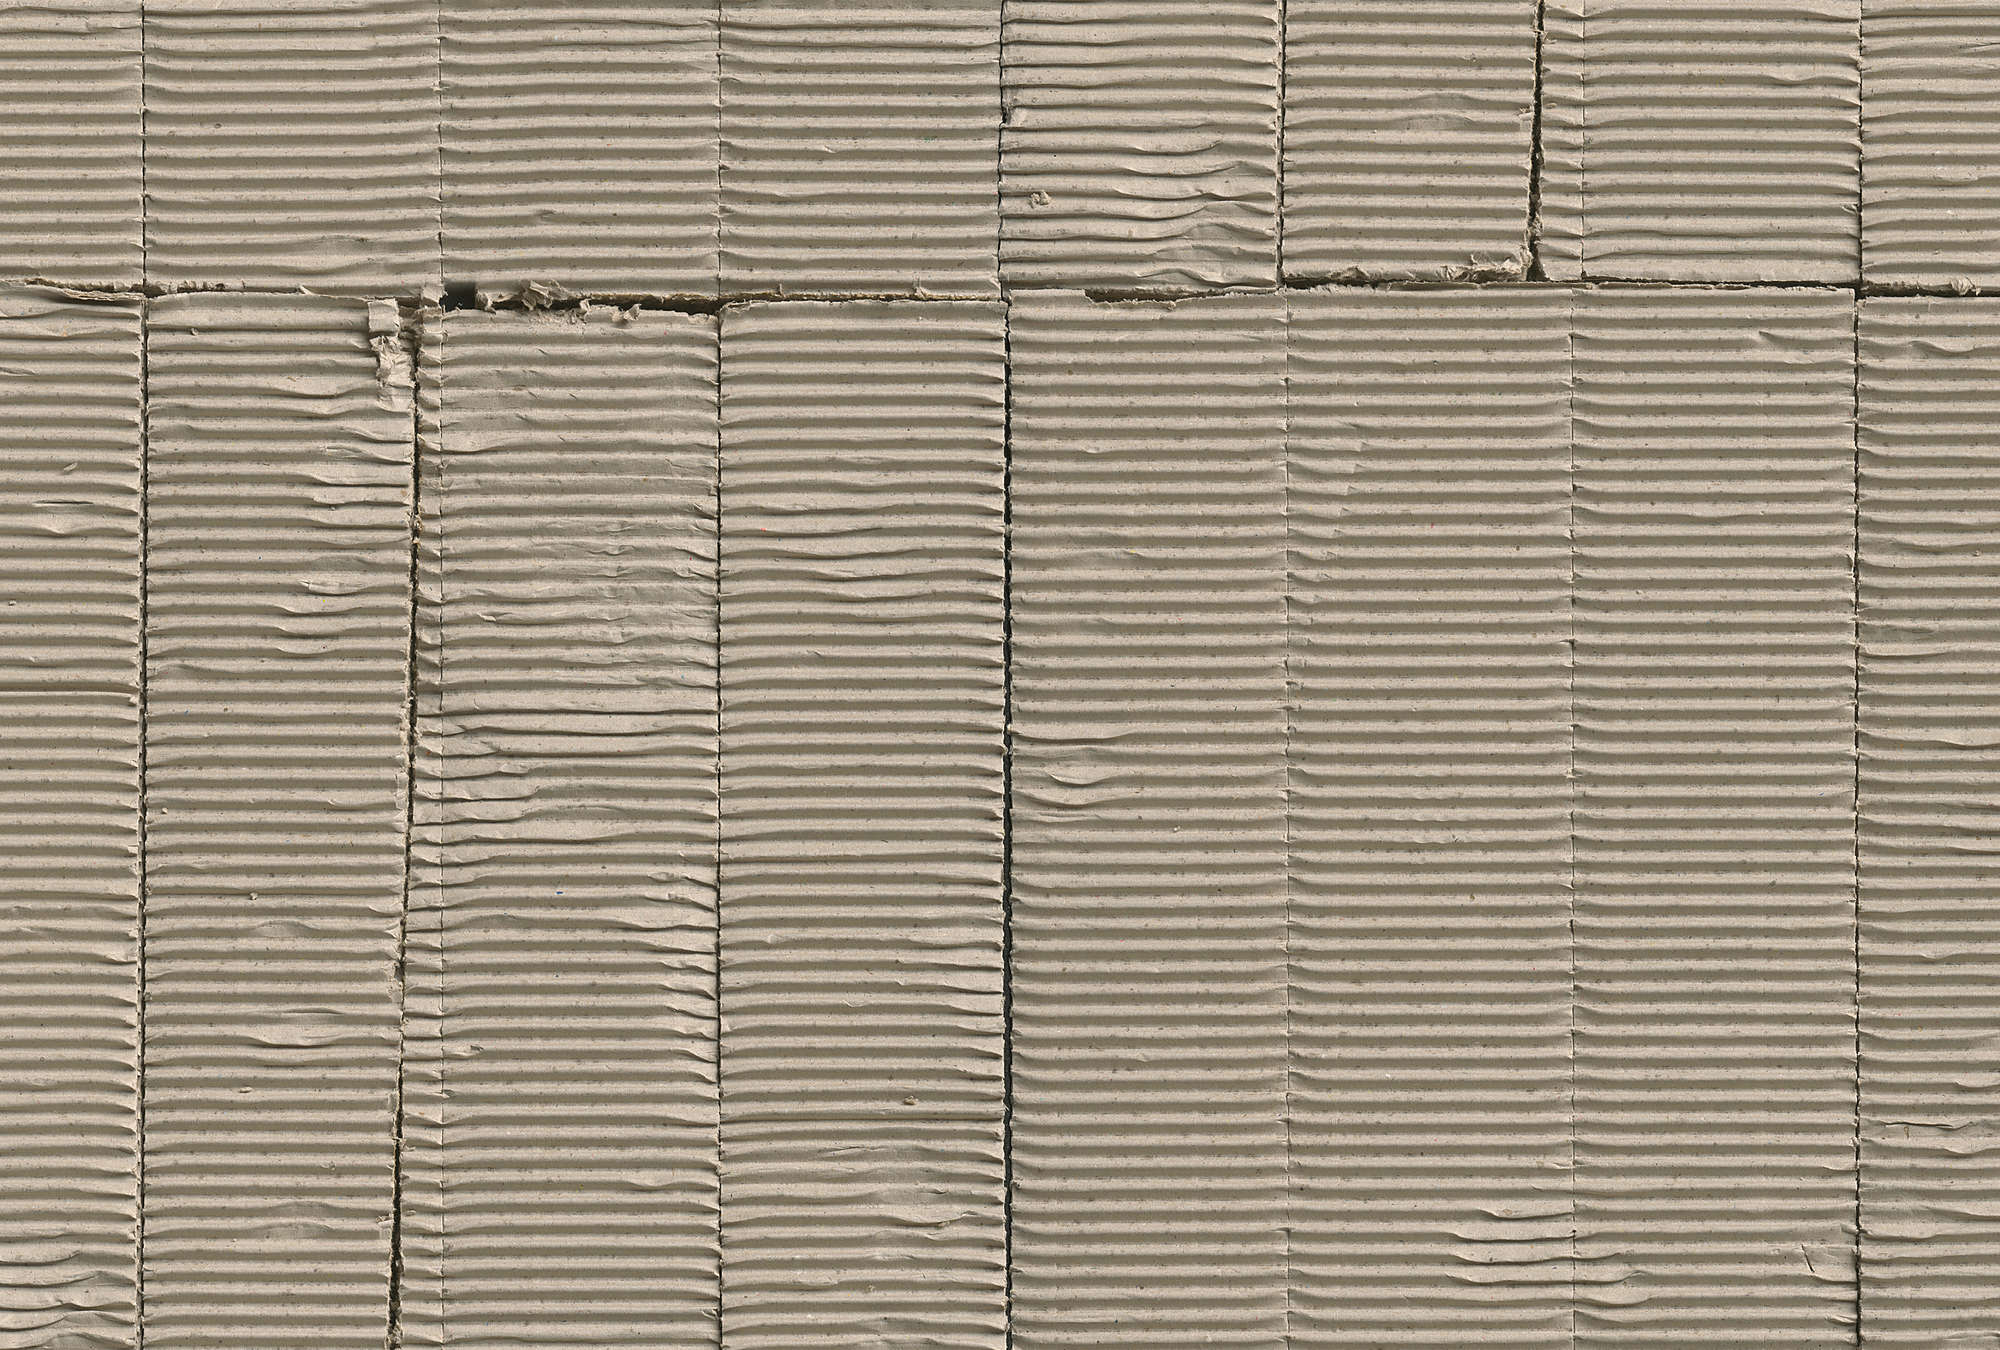             Modelli di cartone ondulato usati come carta da parati
        